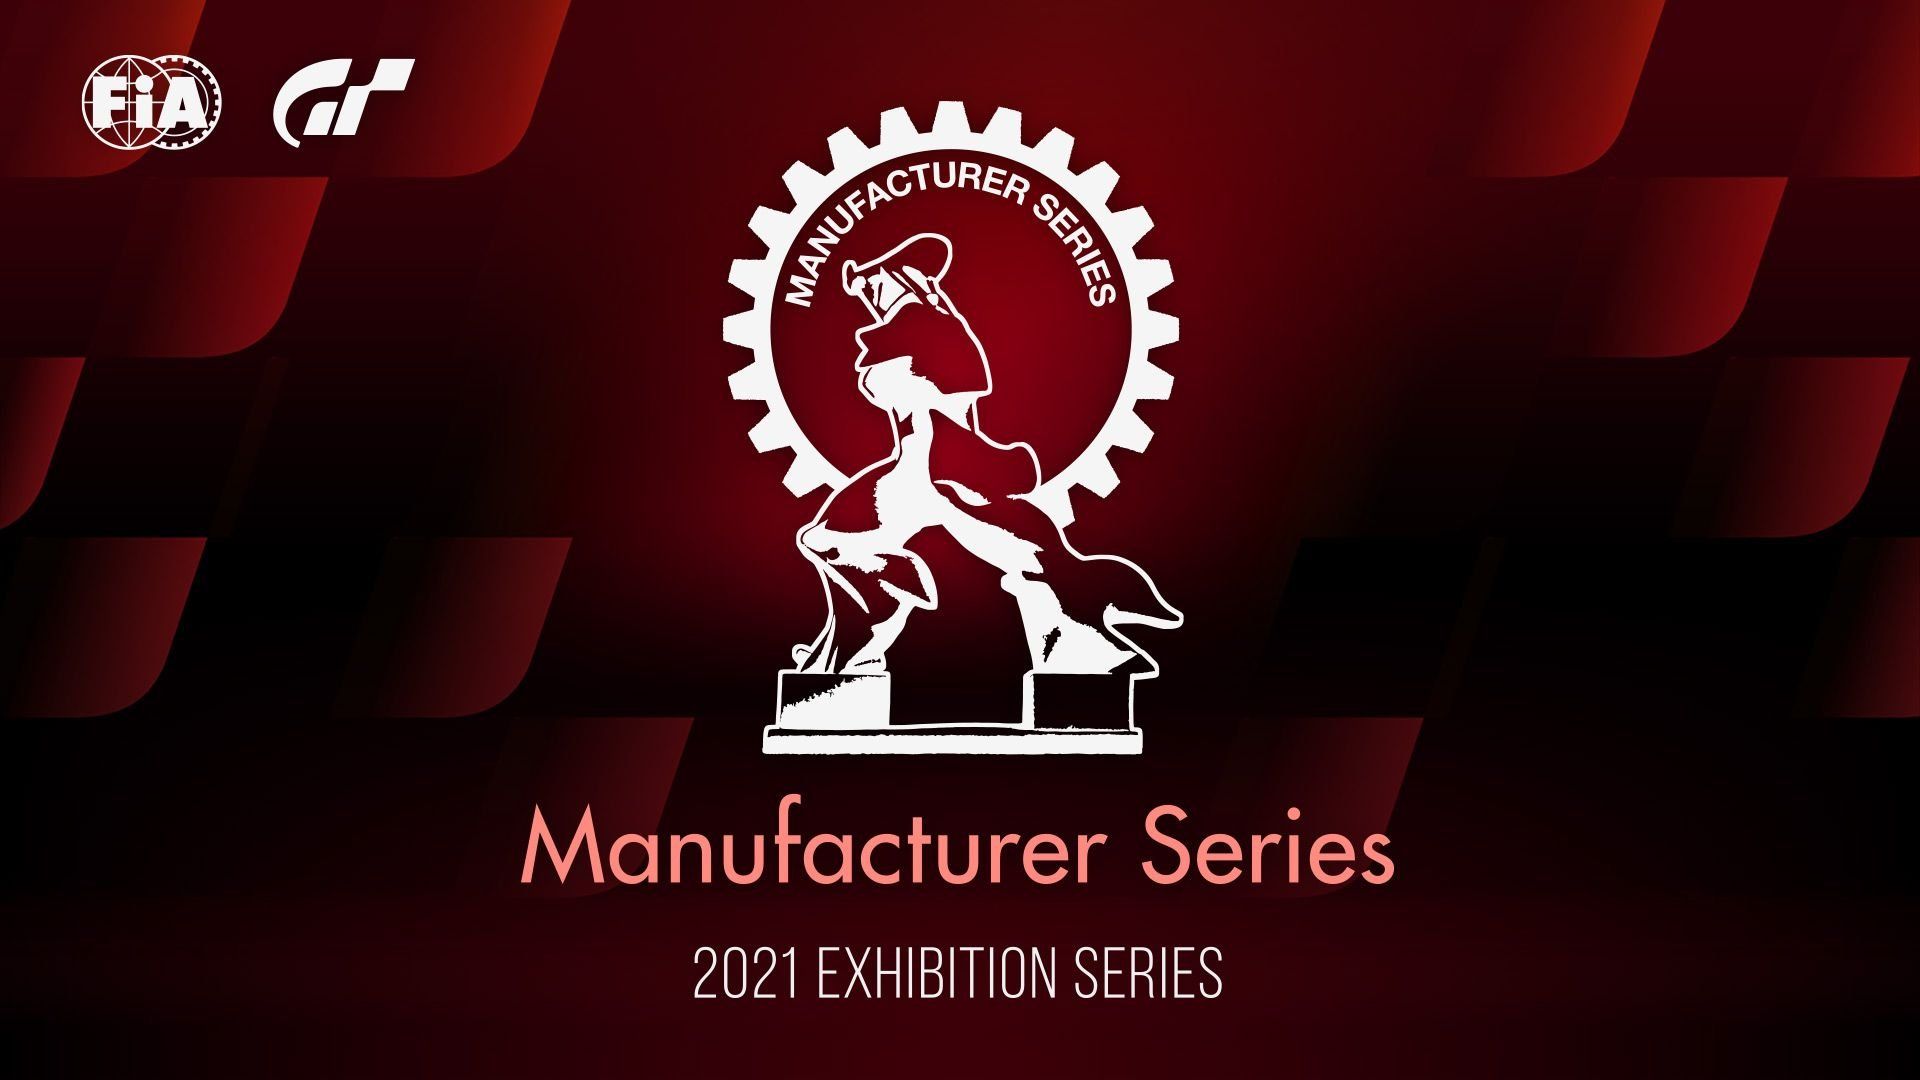 Début des Manufacturer Series des Exhibition Series 2021 - gran-turismo.com